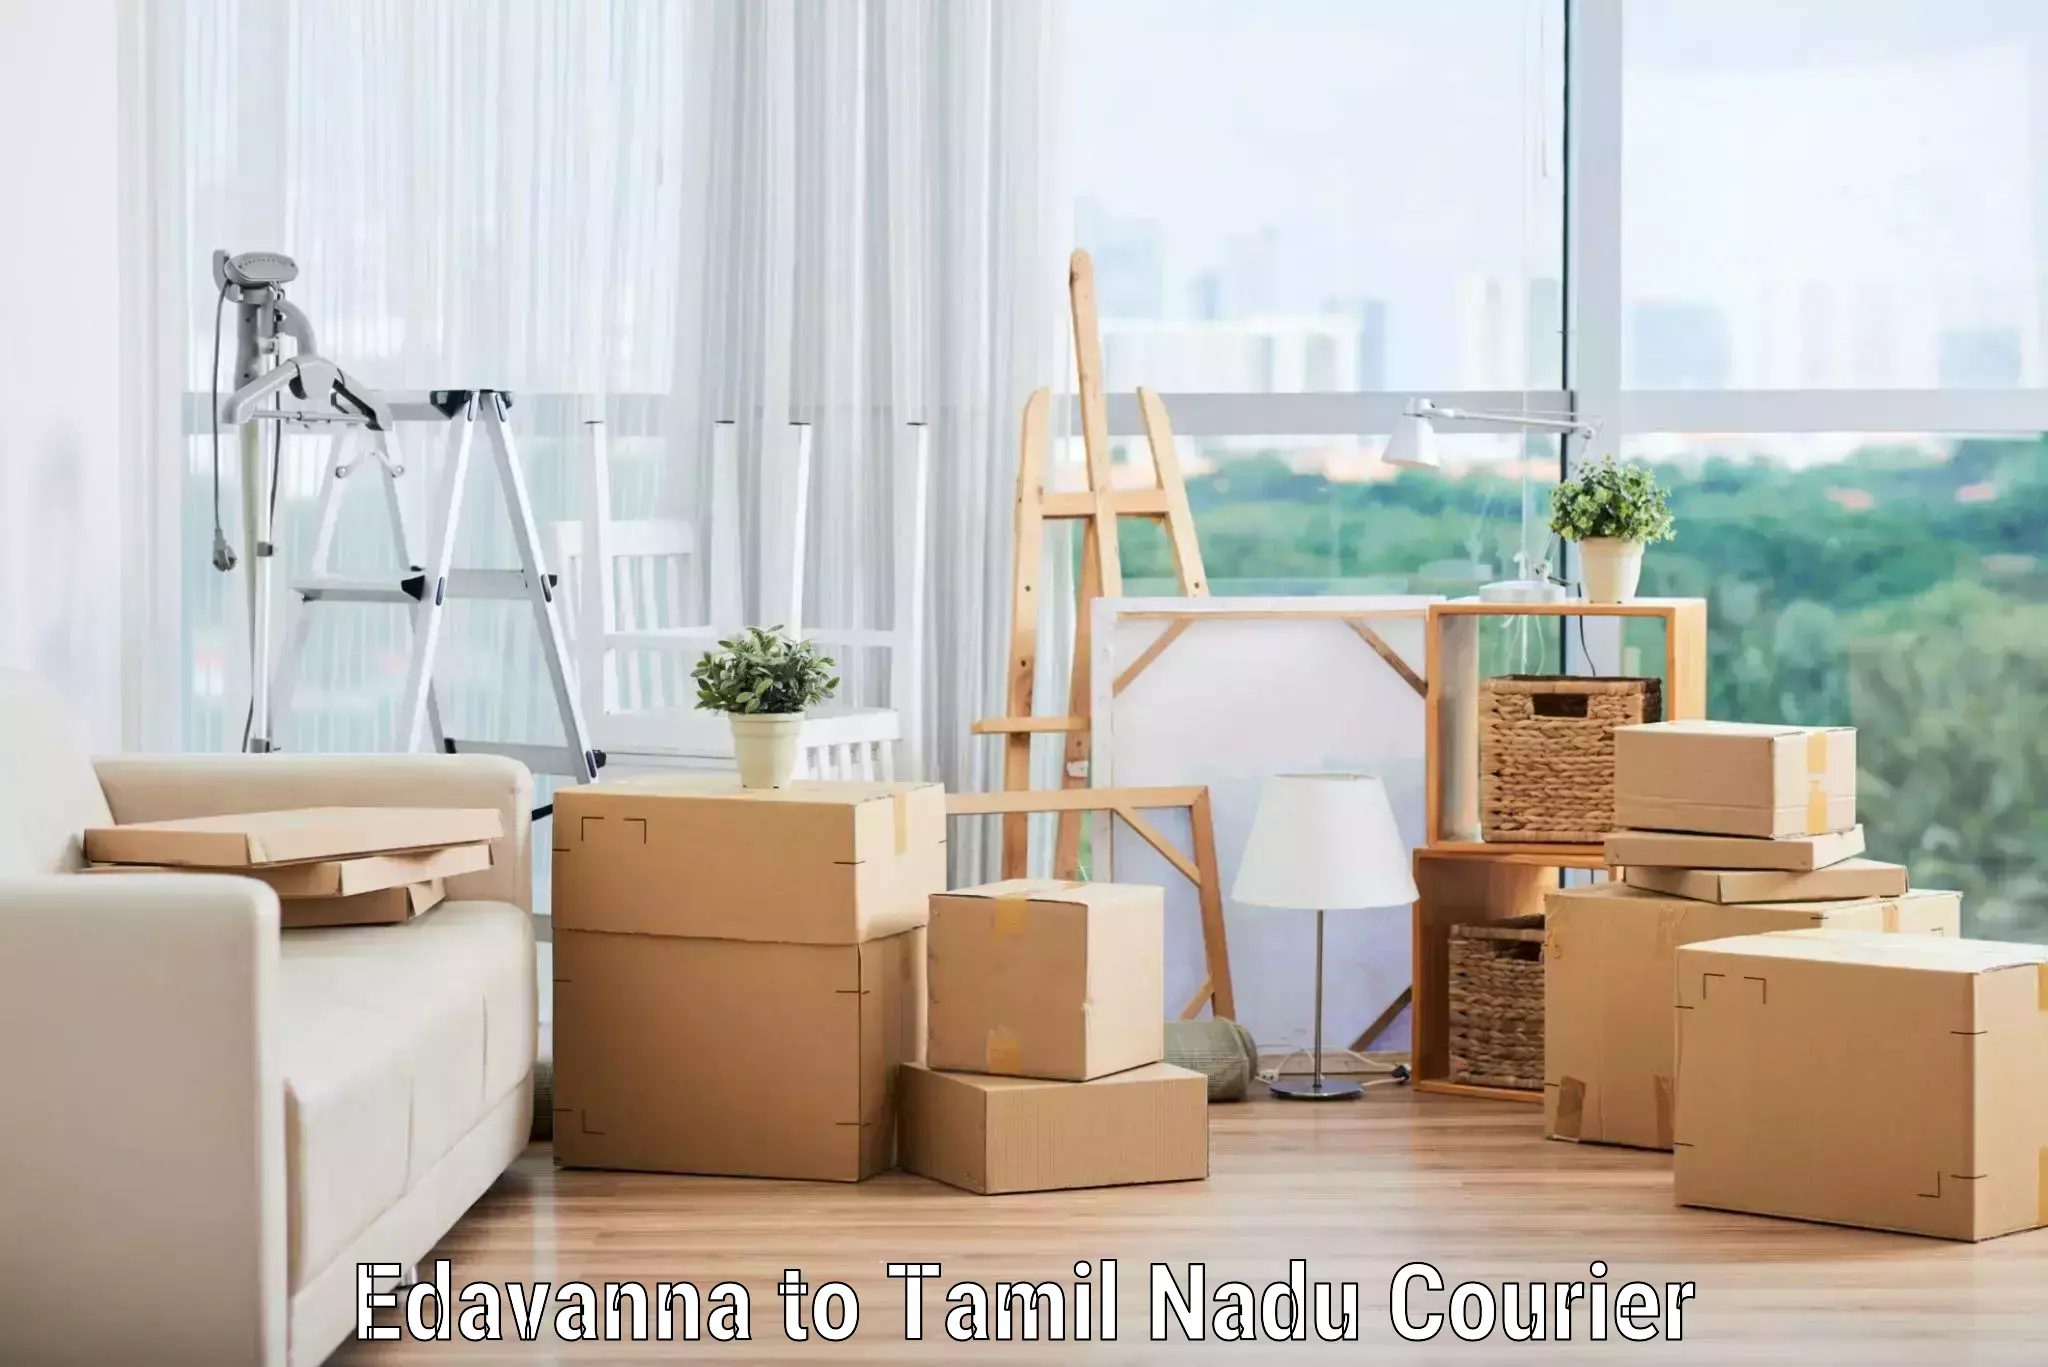 Professional moving company Edavanna to Kanyakumari